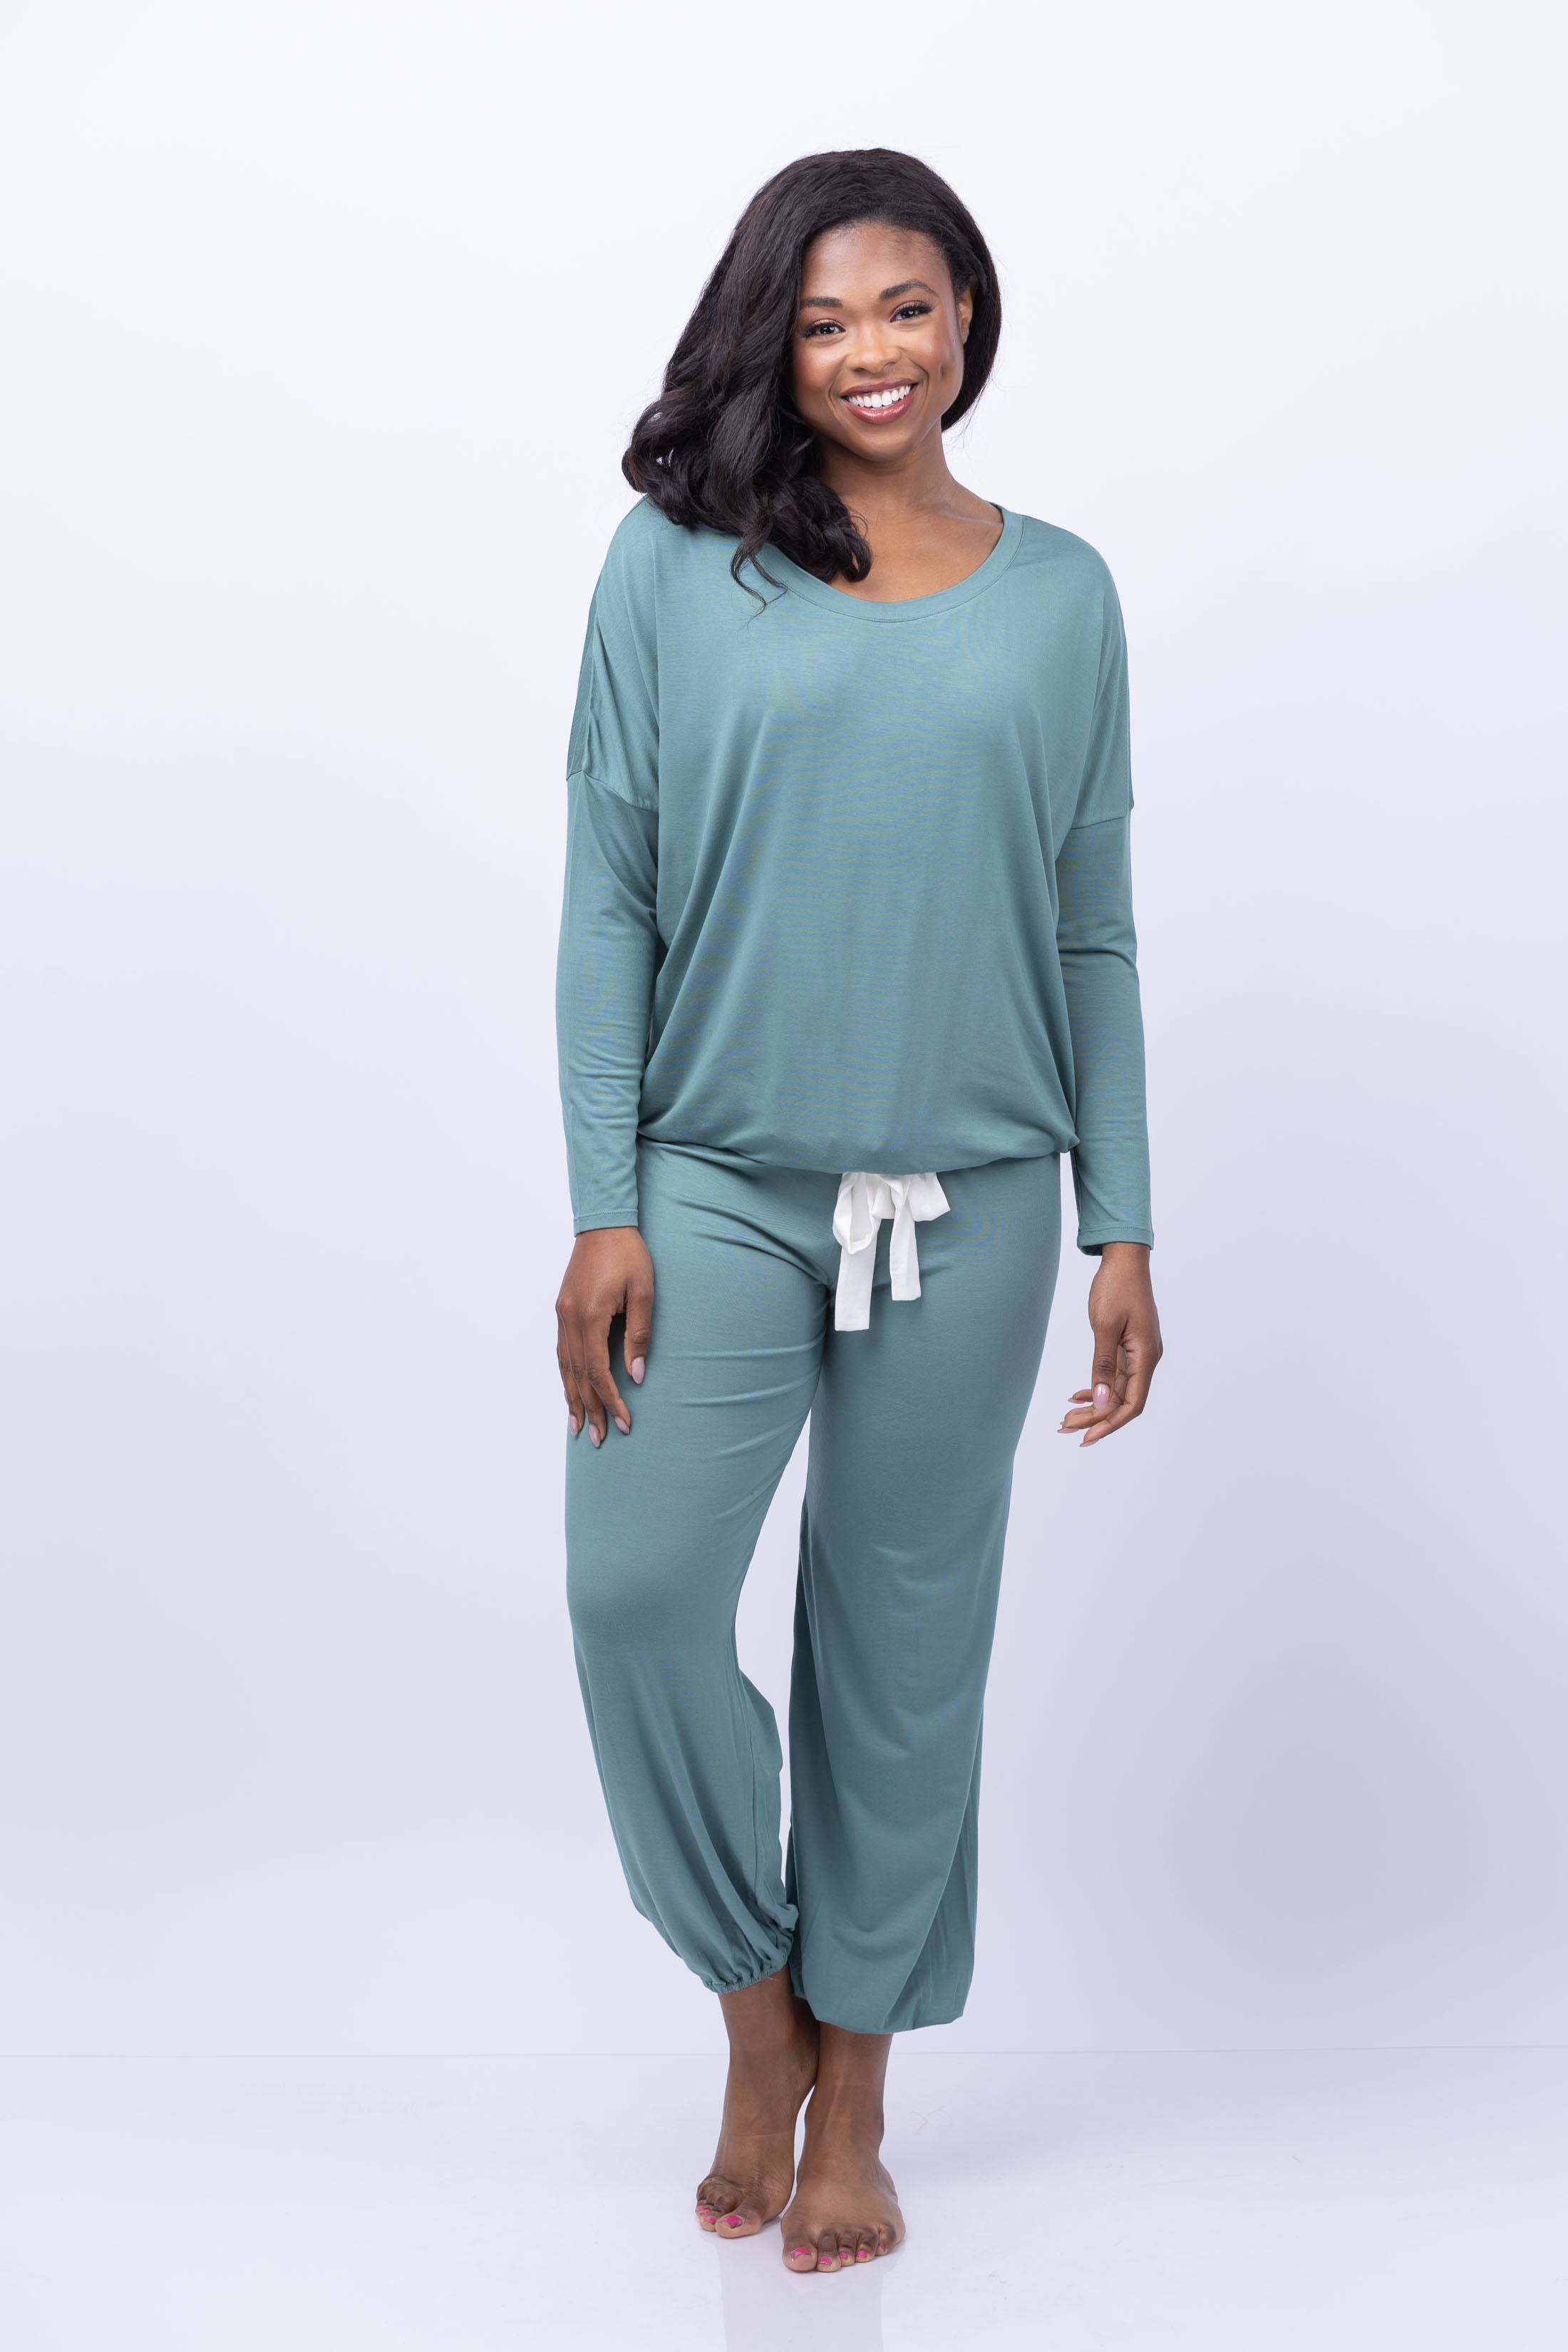 Women's Sleepwear & Pajamas, Loungewear